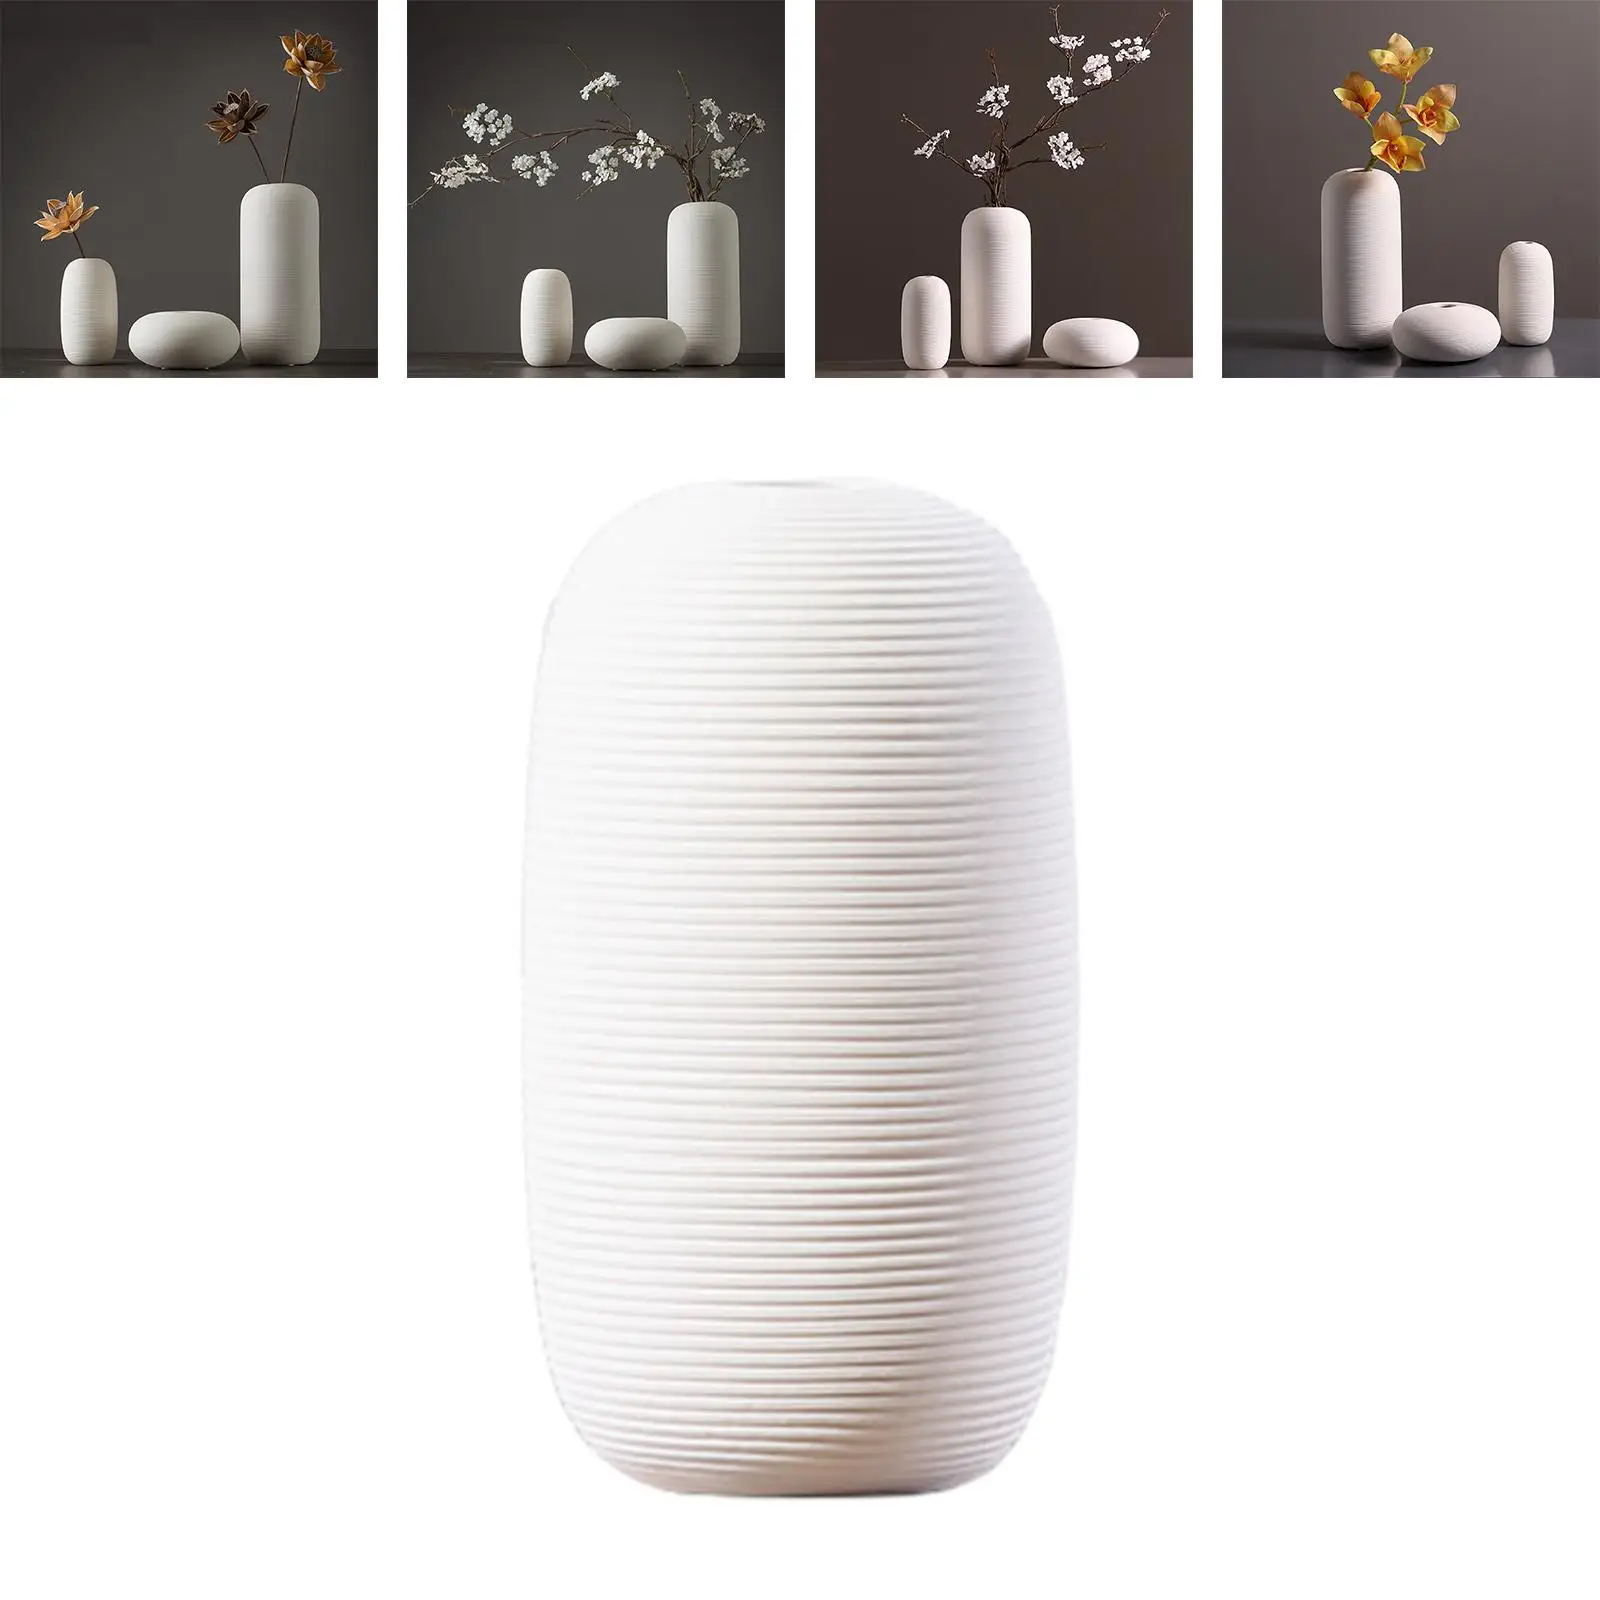 Ceramic Vase Creative Art Dried Flower Vase for Living Room Fireplace Office